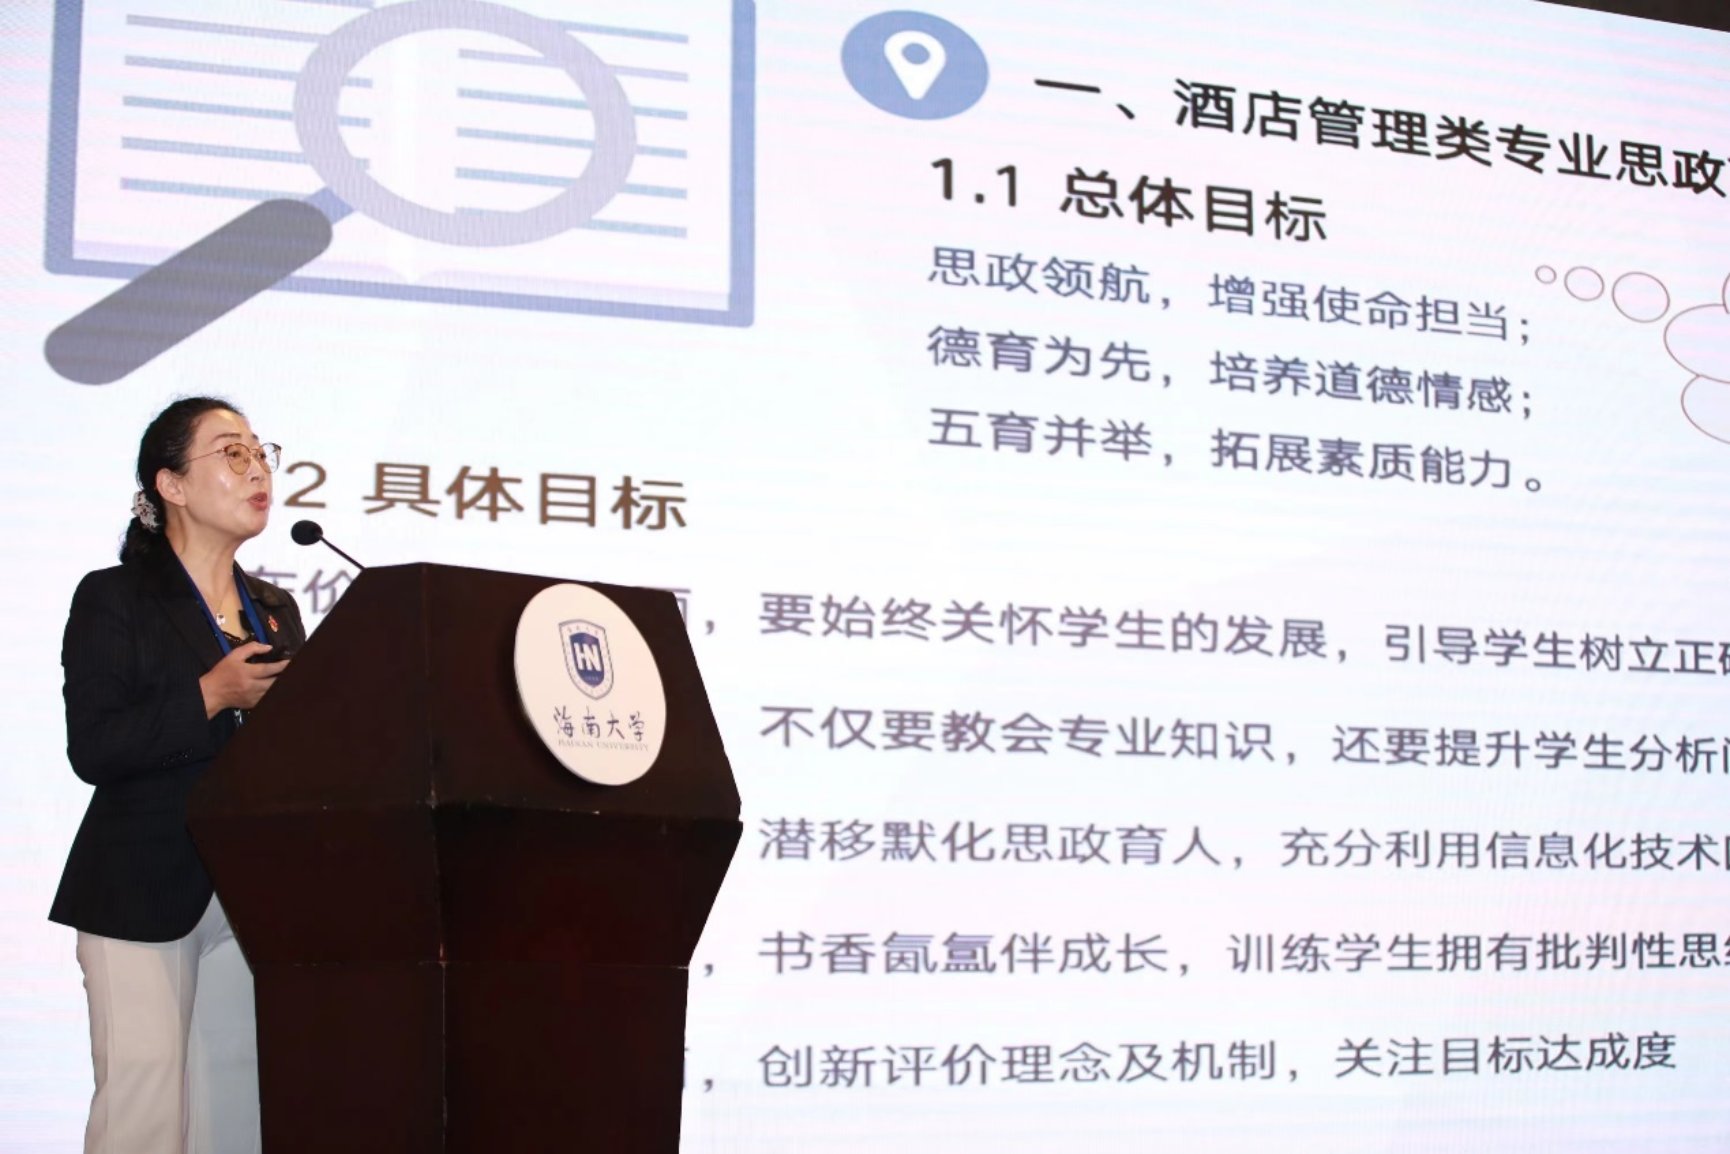 姜红教授代表酒店管理专业组在全体会议发言